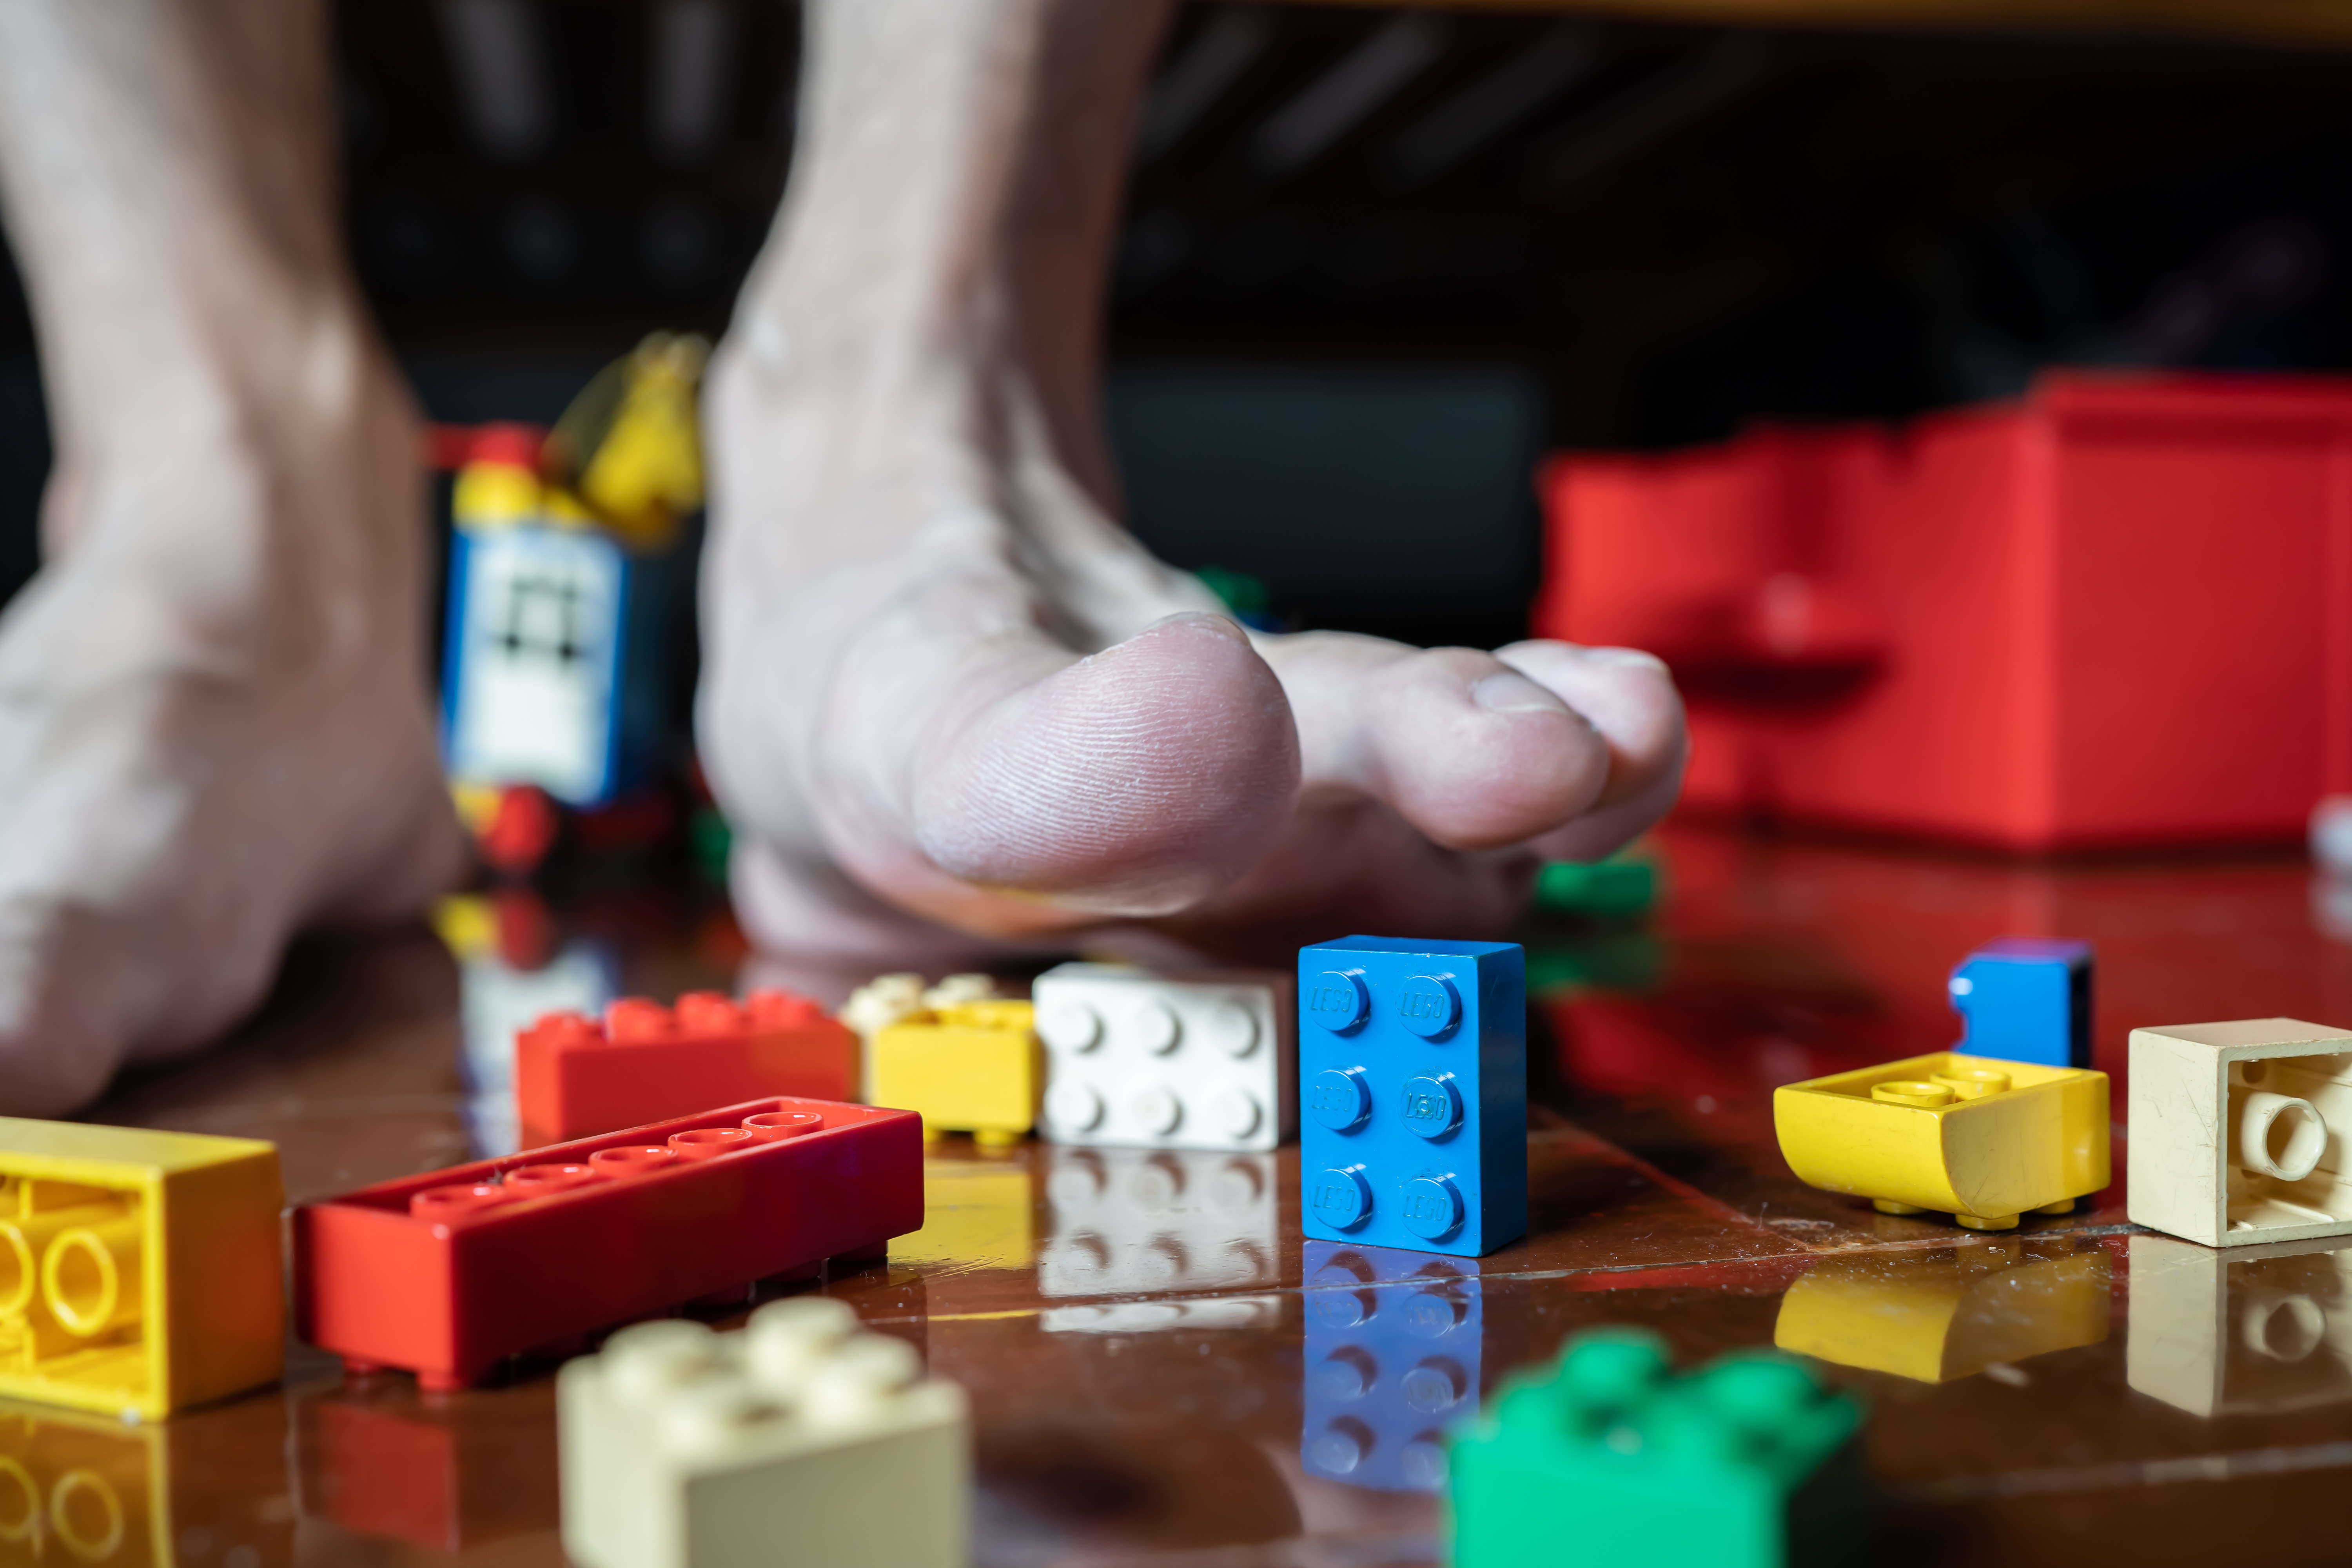 Lego rezygnuje z plastikowych klocków? Z czego będą produkowane zabawki